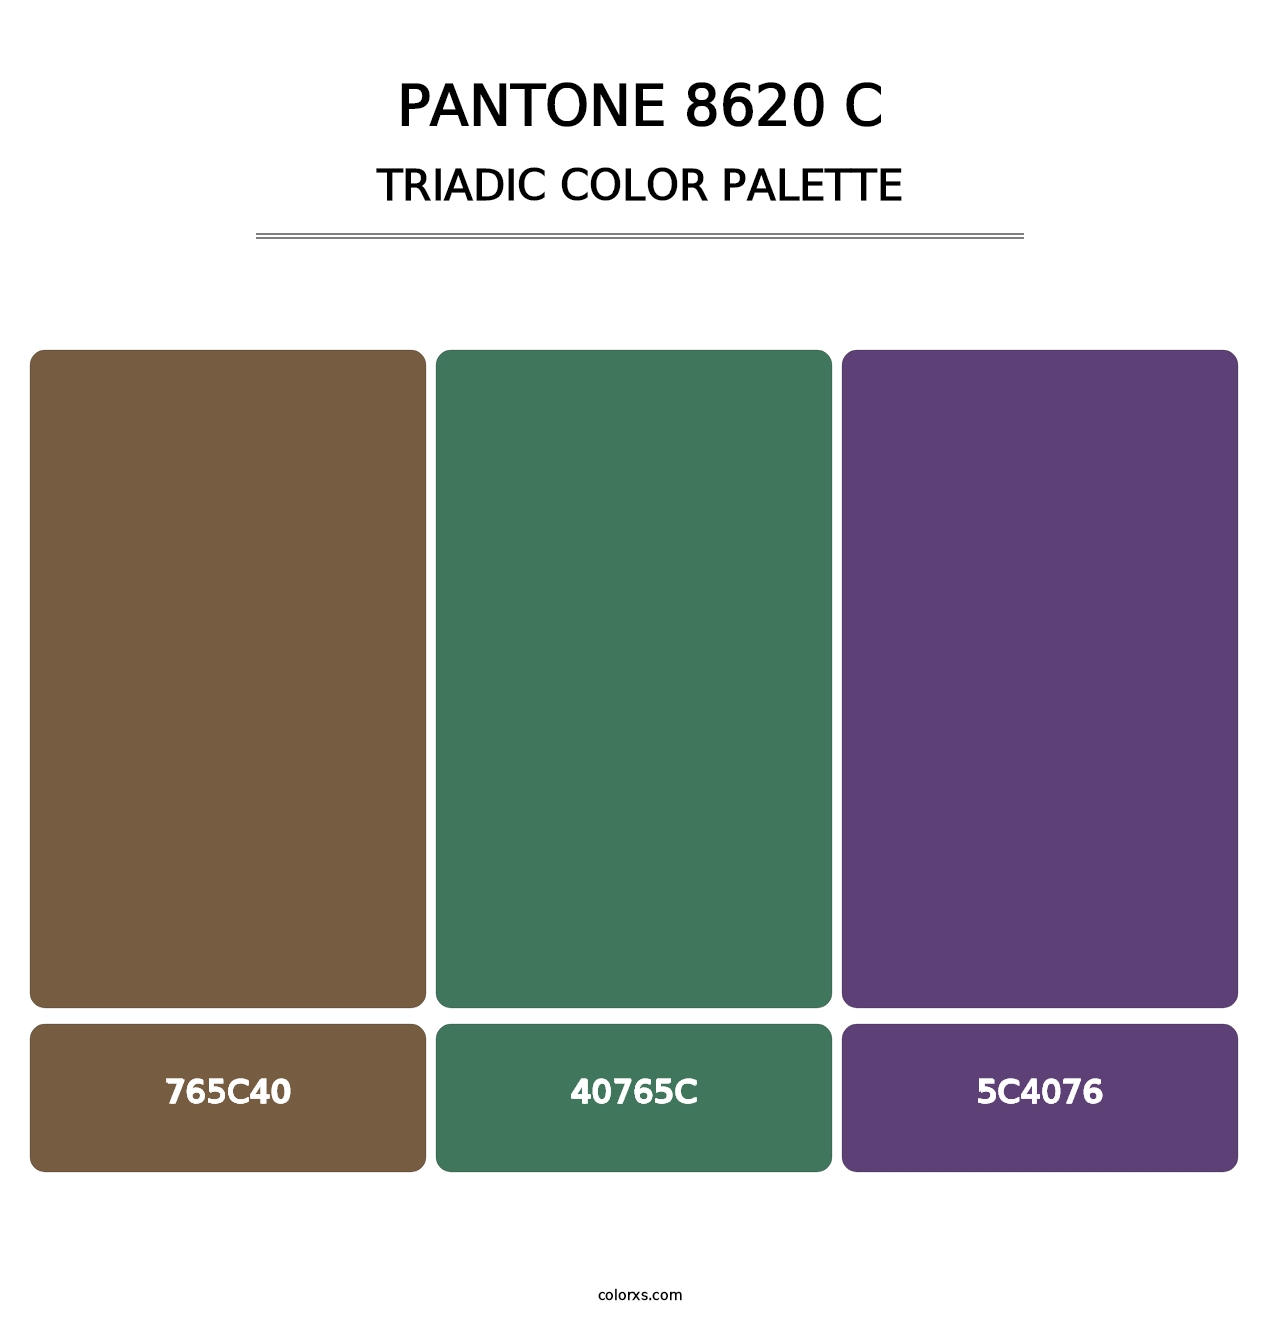 PANTONE 8620 C - Triadic Color Palette